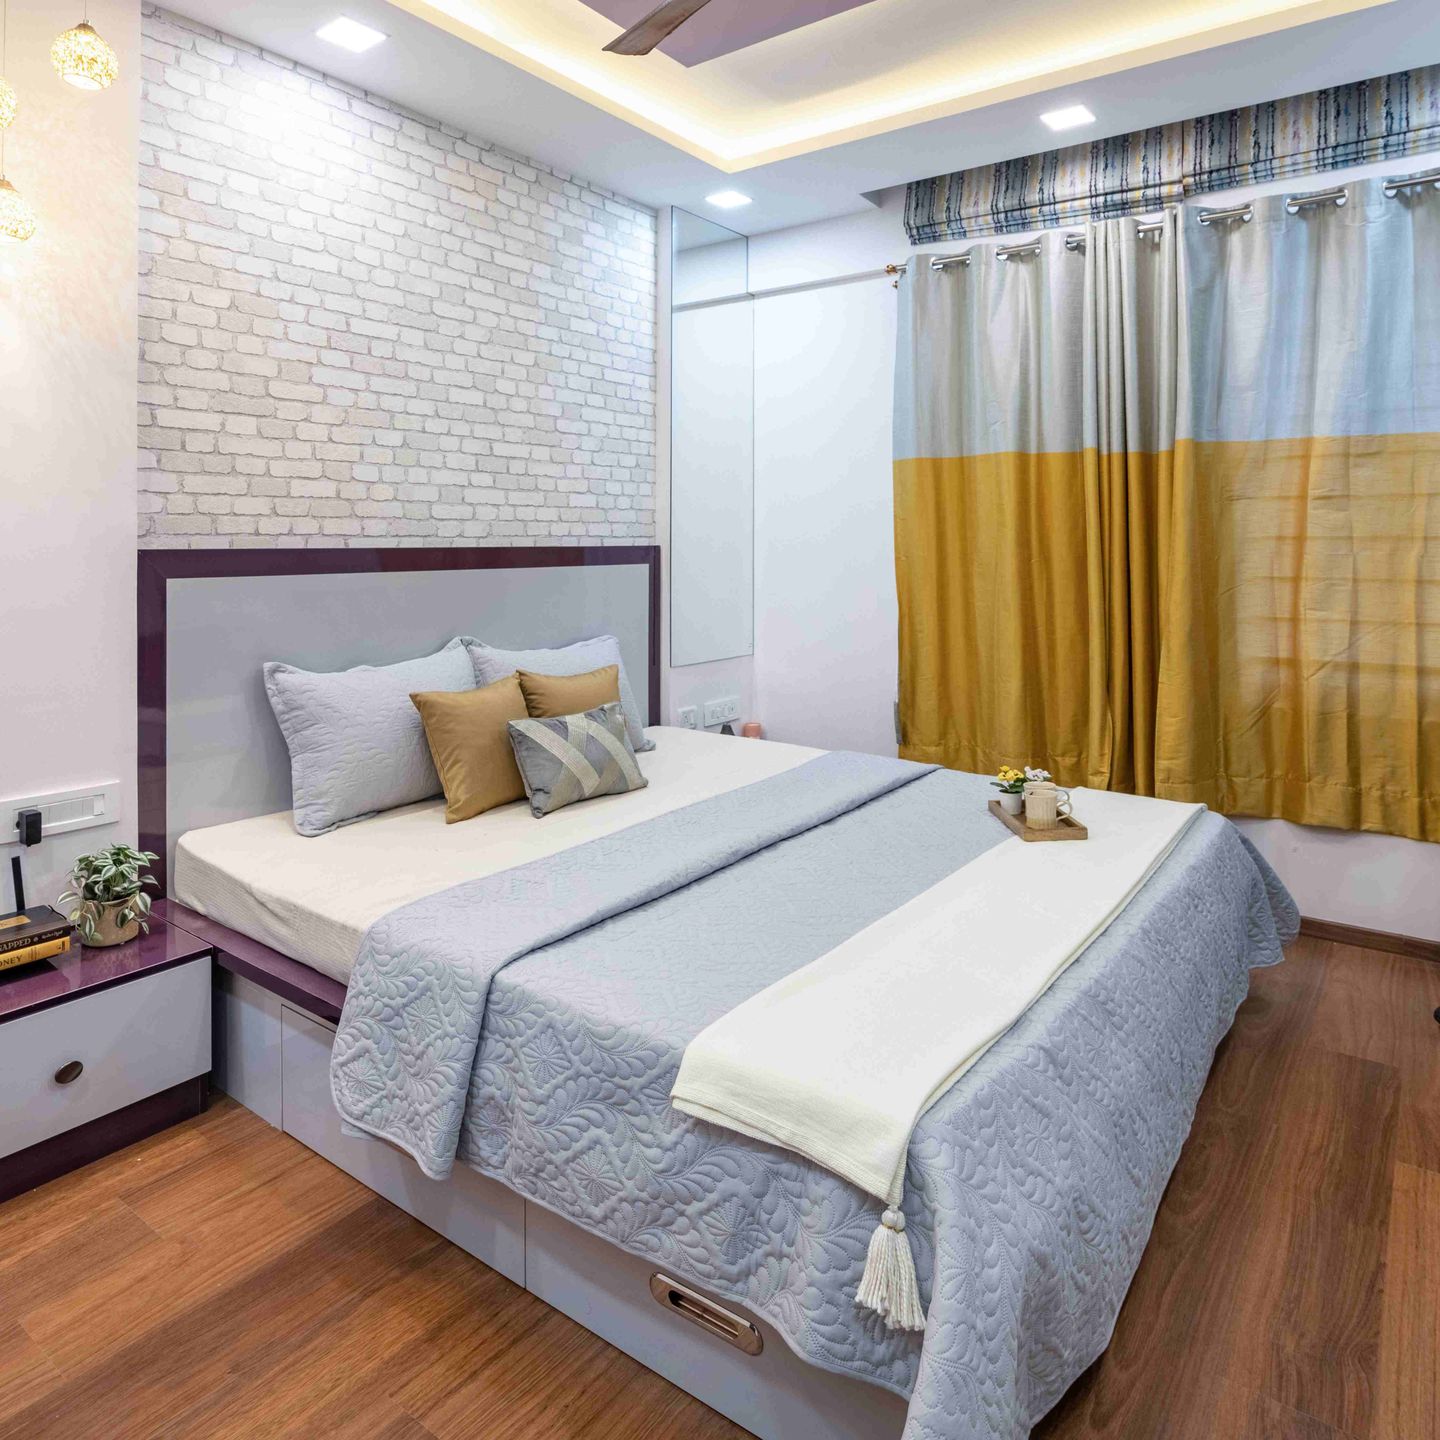 Bedroom Design With A Queen Bed With Inbuilt Storage - Livspace